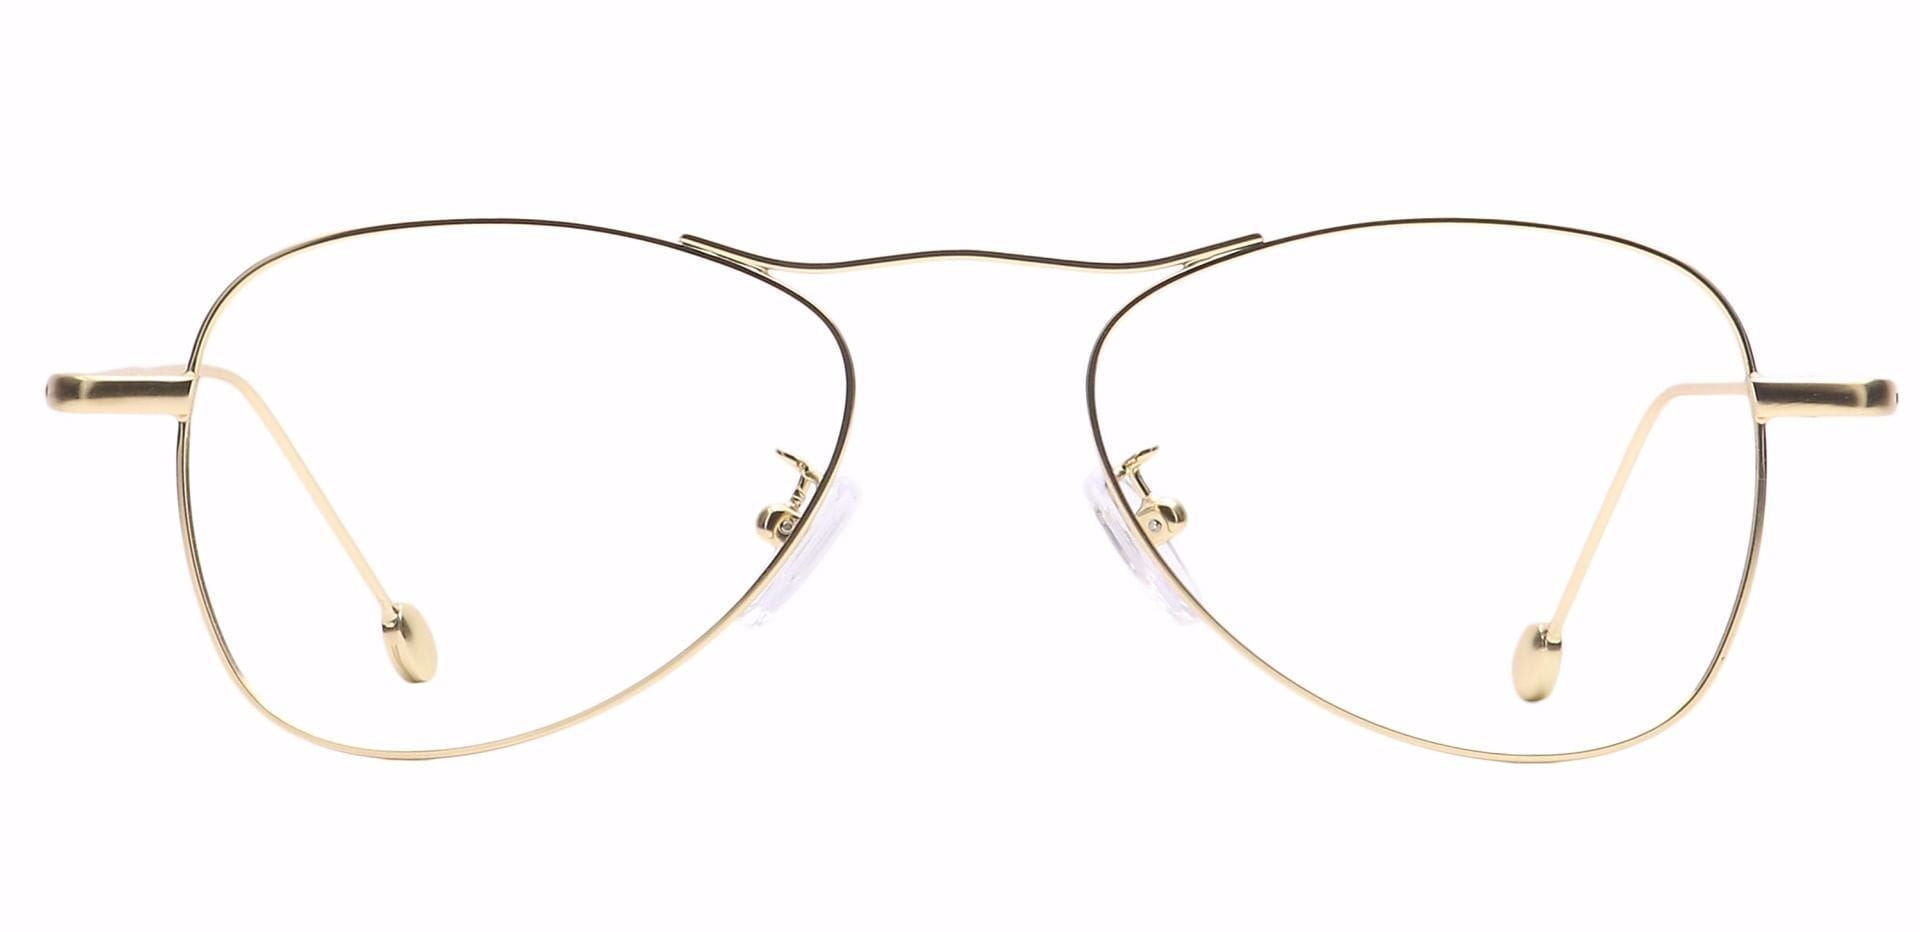 Brio Aviator Eyeglasses Frame - Gold